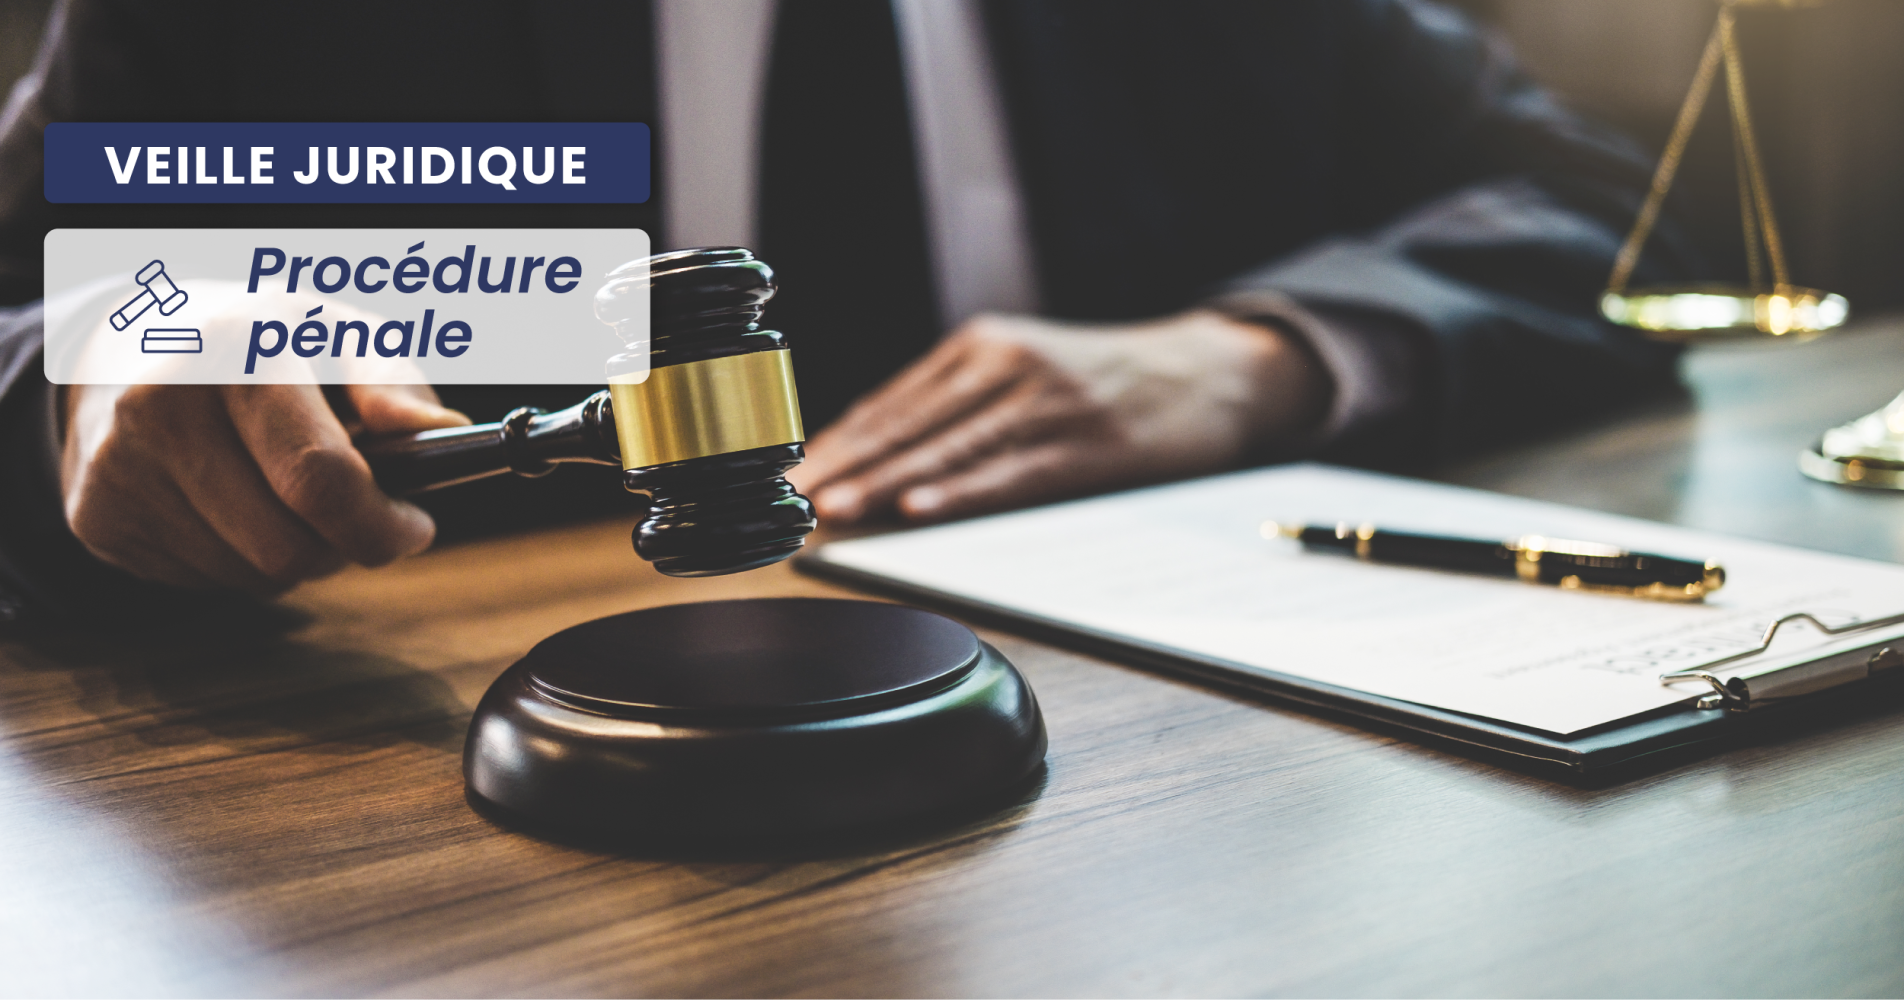 PROCÉDURE PÉNALE – La dernière juridiction du fond est compétente pour statuer sur la demande de mise en liberté formée avant l’arrêt de la Cour de cassation